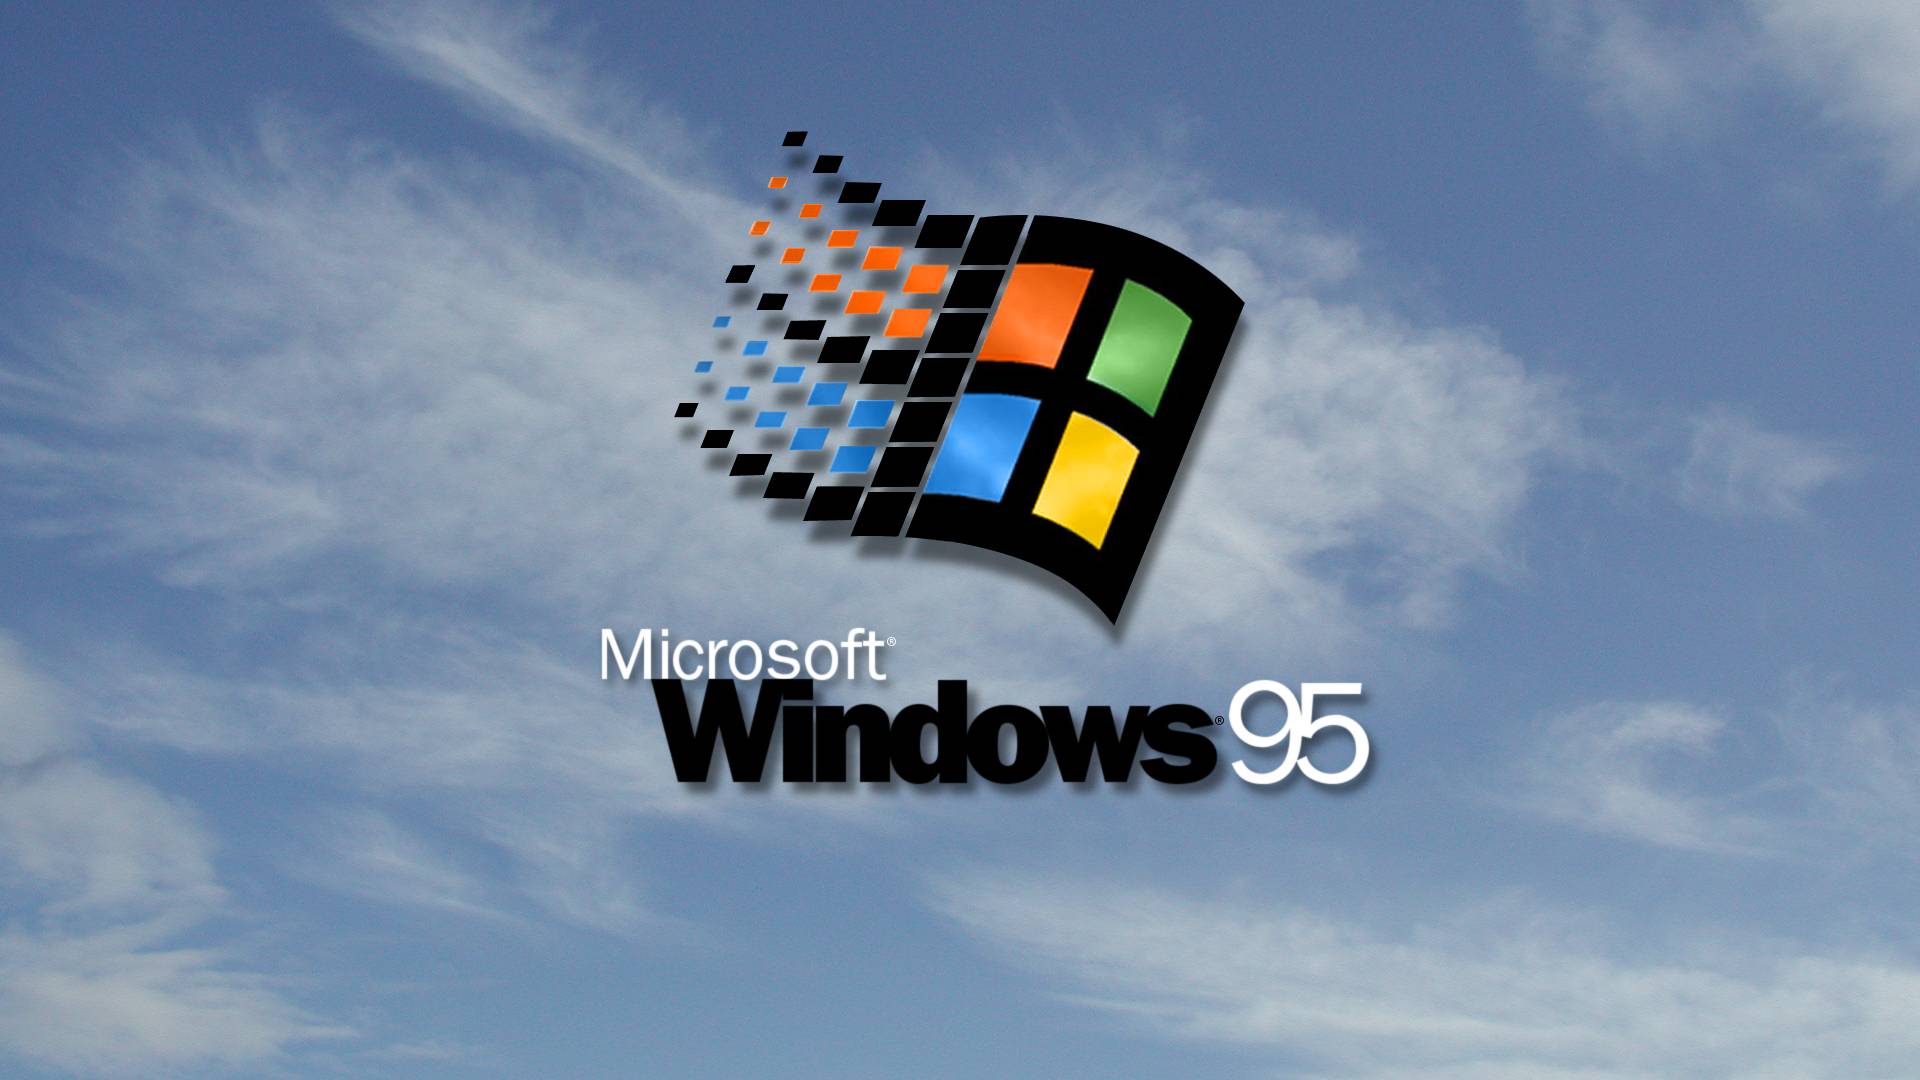 Windows 95 HD Wallpaper | 1920x1080 | ID:47810